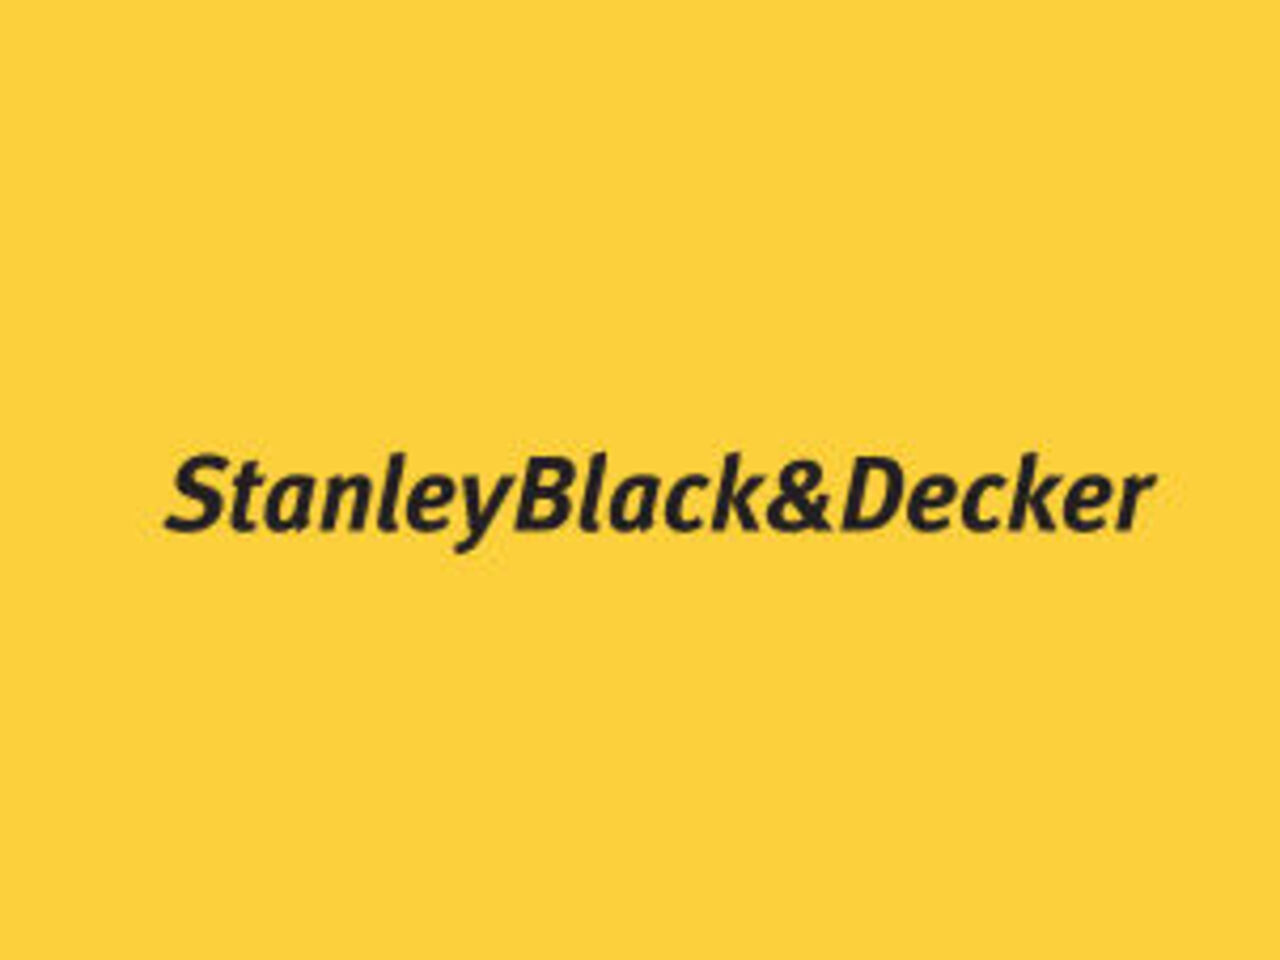 WorldSkills International welcomes Stanley Black & Decker